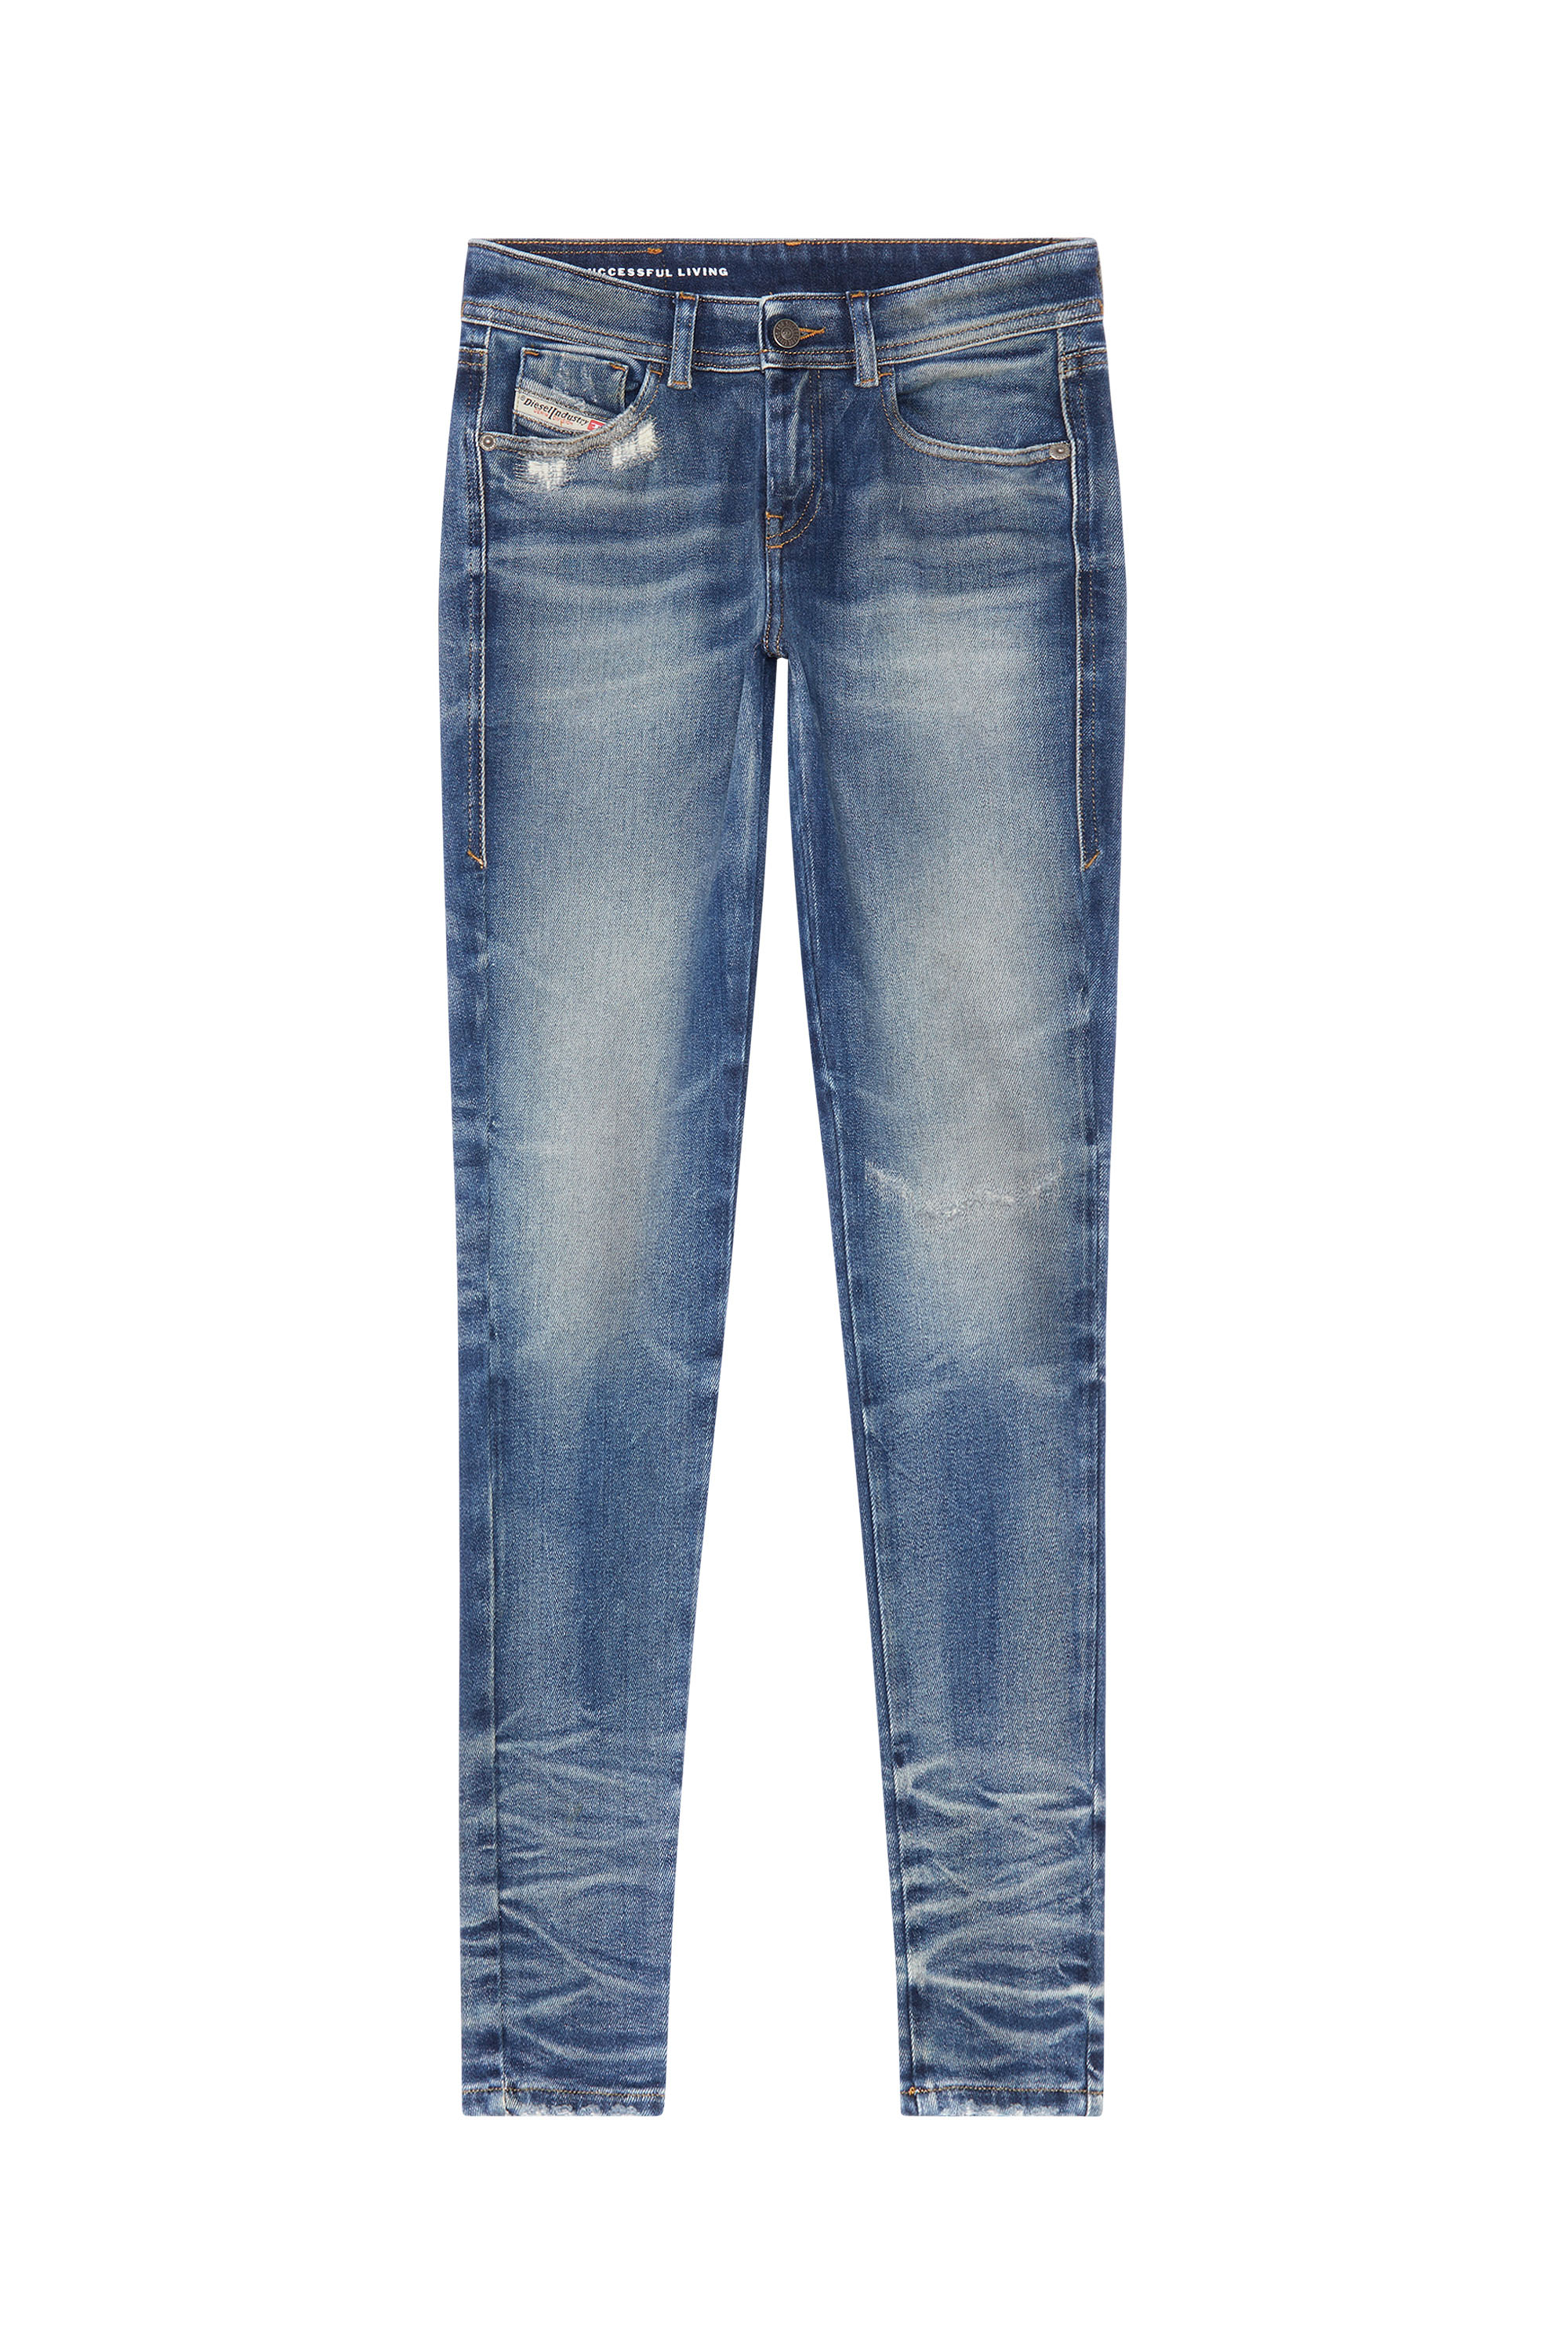 Diesel - Super skinny Jeans 2017 Slandy 09G14, Medium blue - Image 5